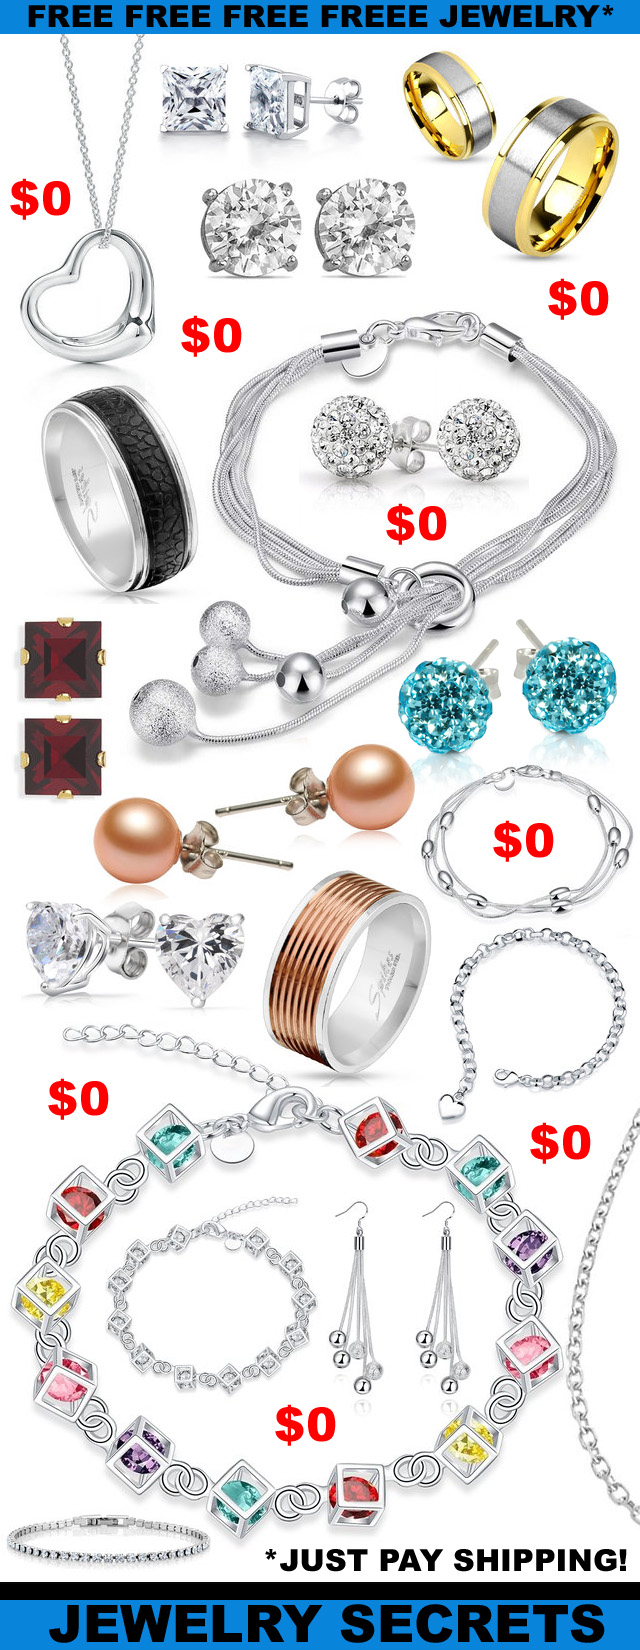 Free Jewelry Free Jewelry Free Jewelry Earrings Pendants Rings Bracelets FREE